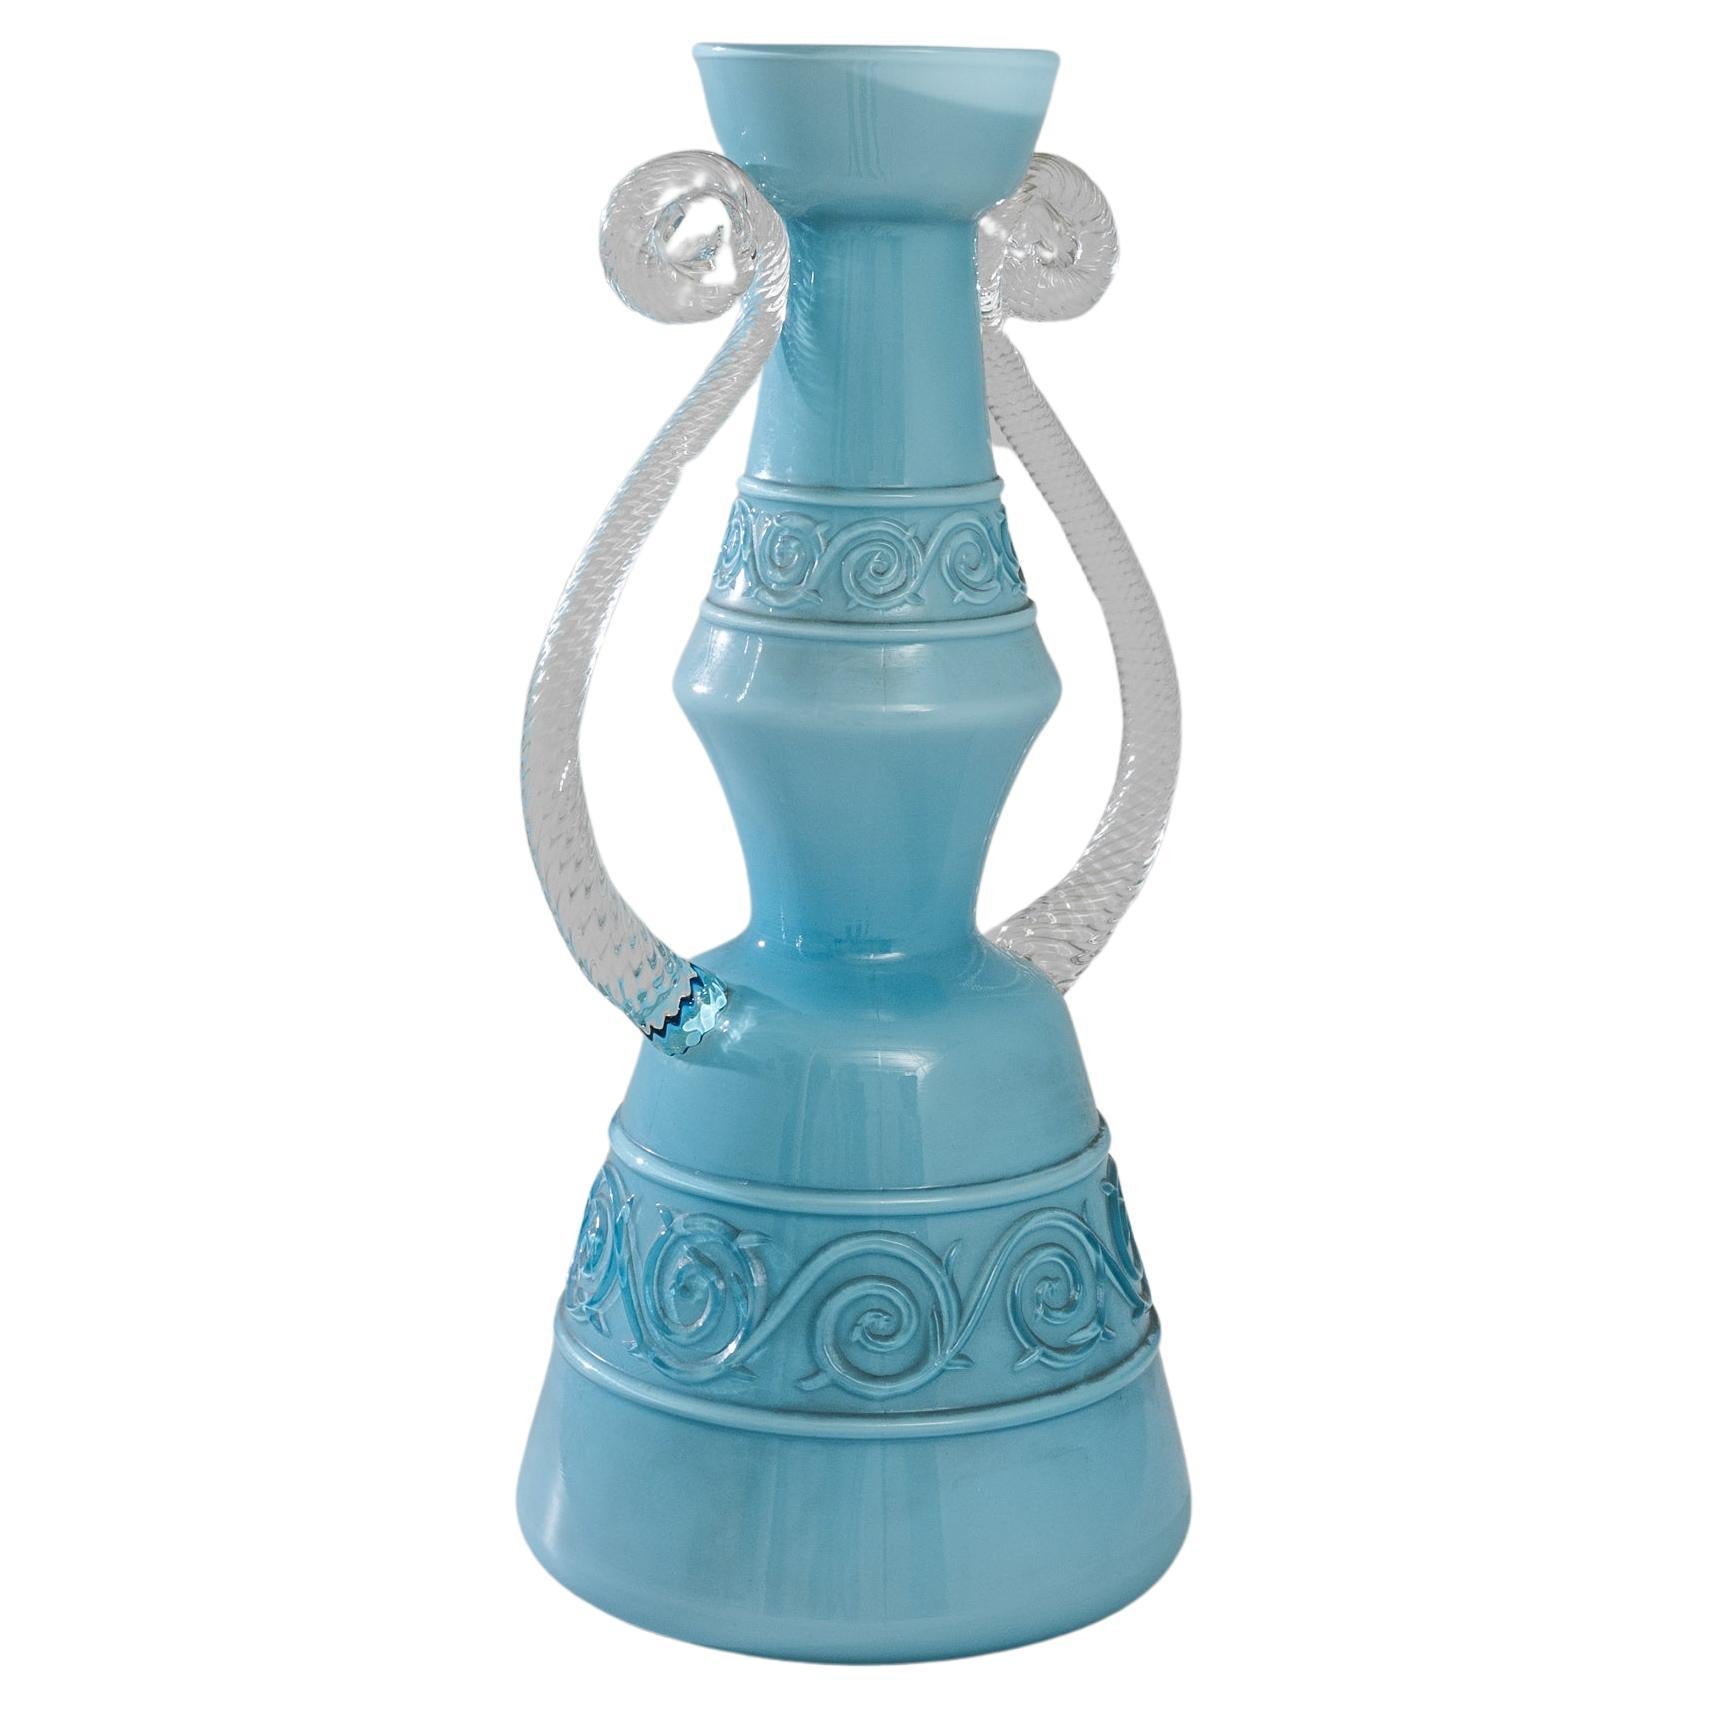 1960s Italian Blue Glass Vase